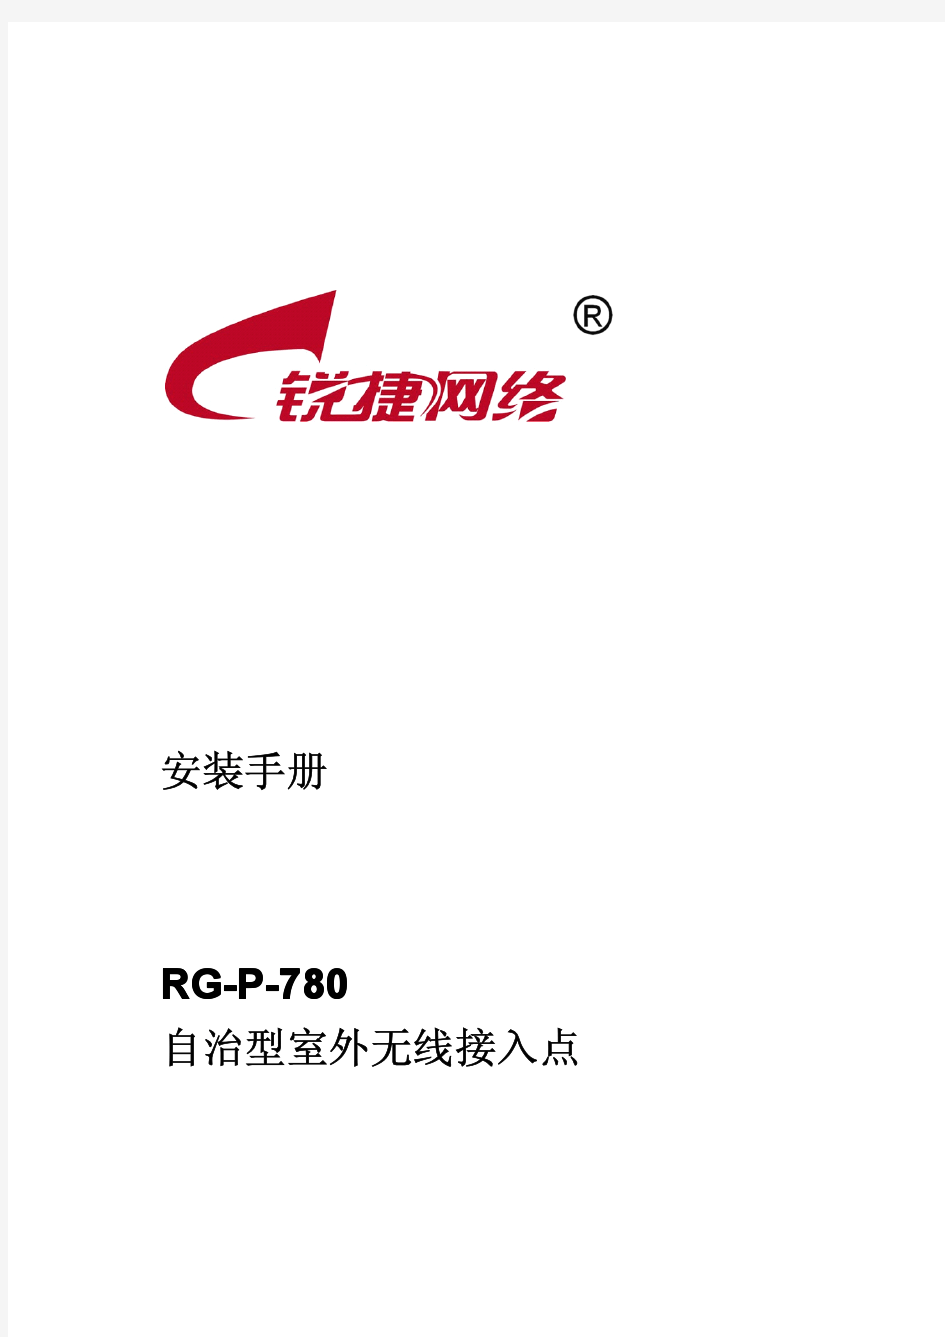 RG-P-780安装手册